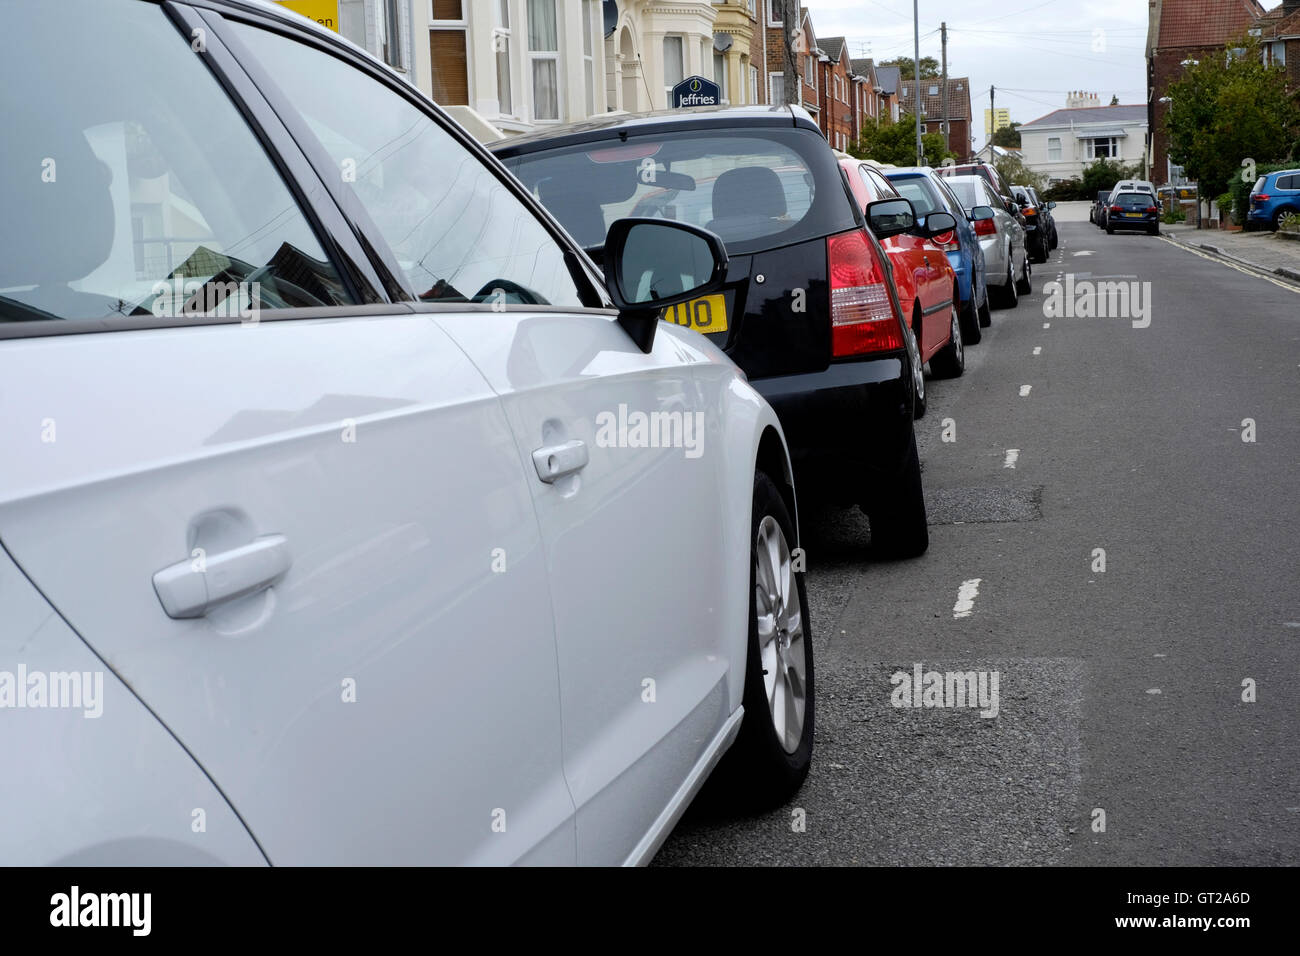 Mal voiture garée dans un quartier résidentiel de la rue urbaine england uk Banque D'Images